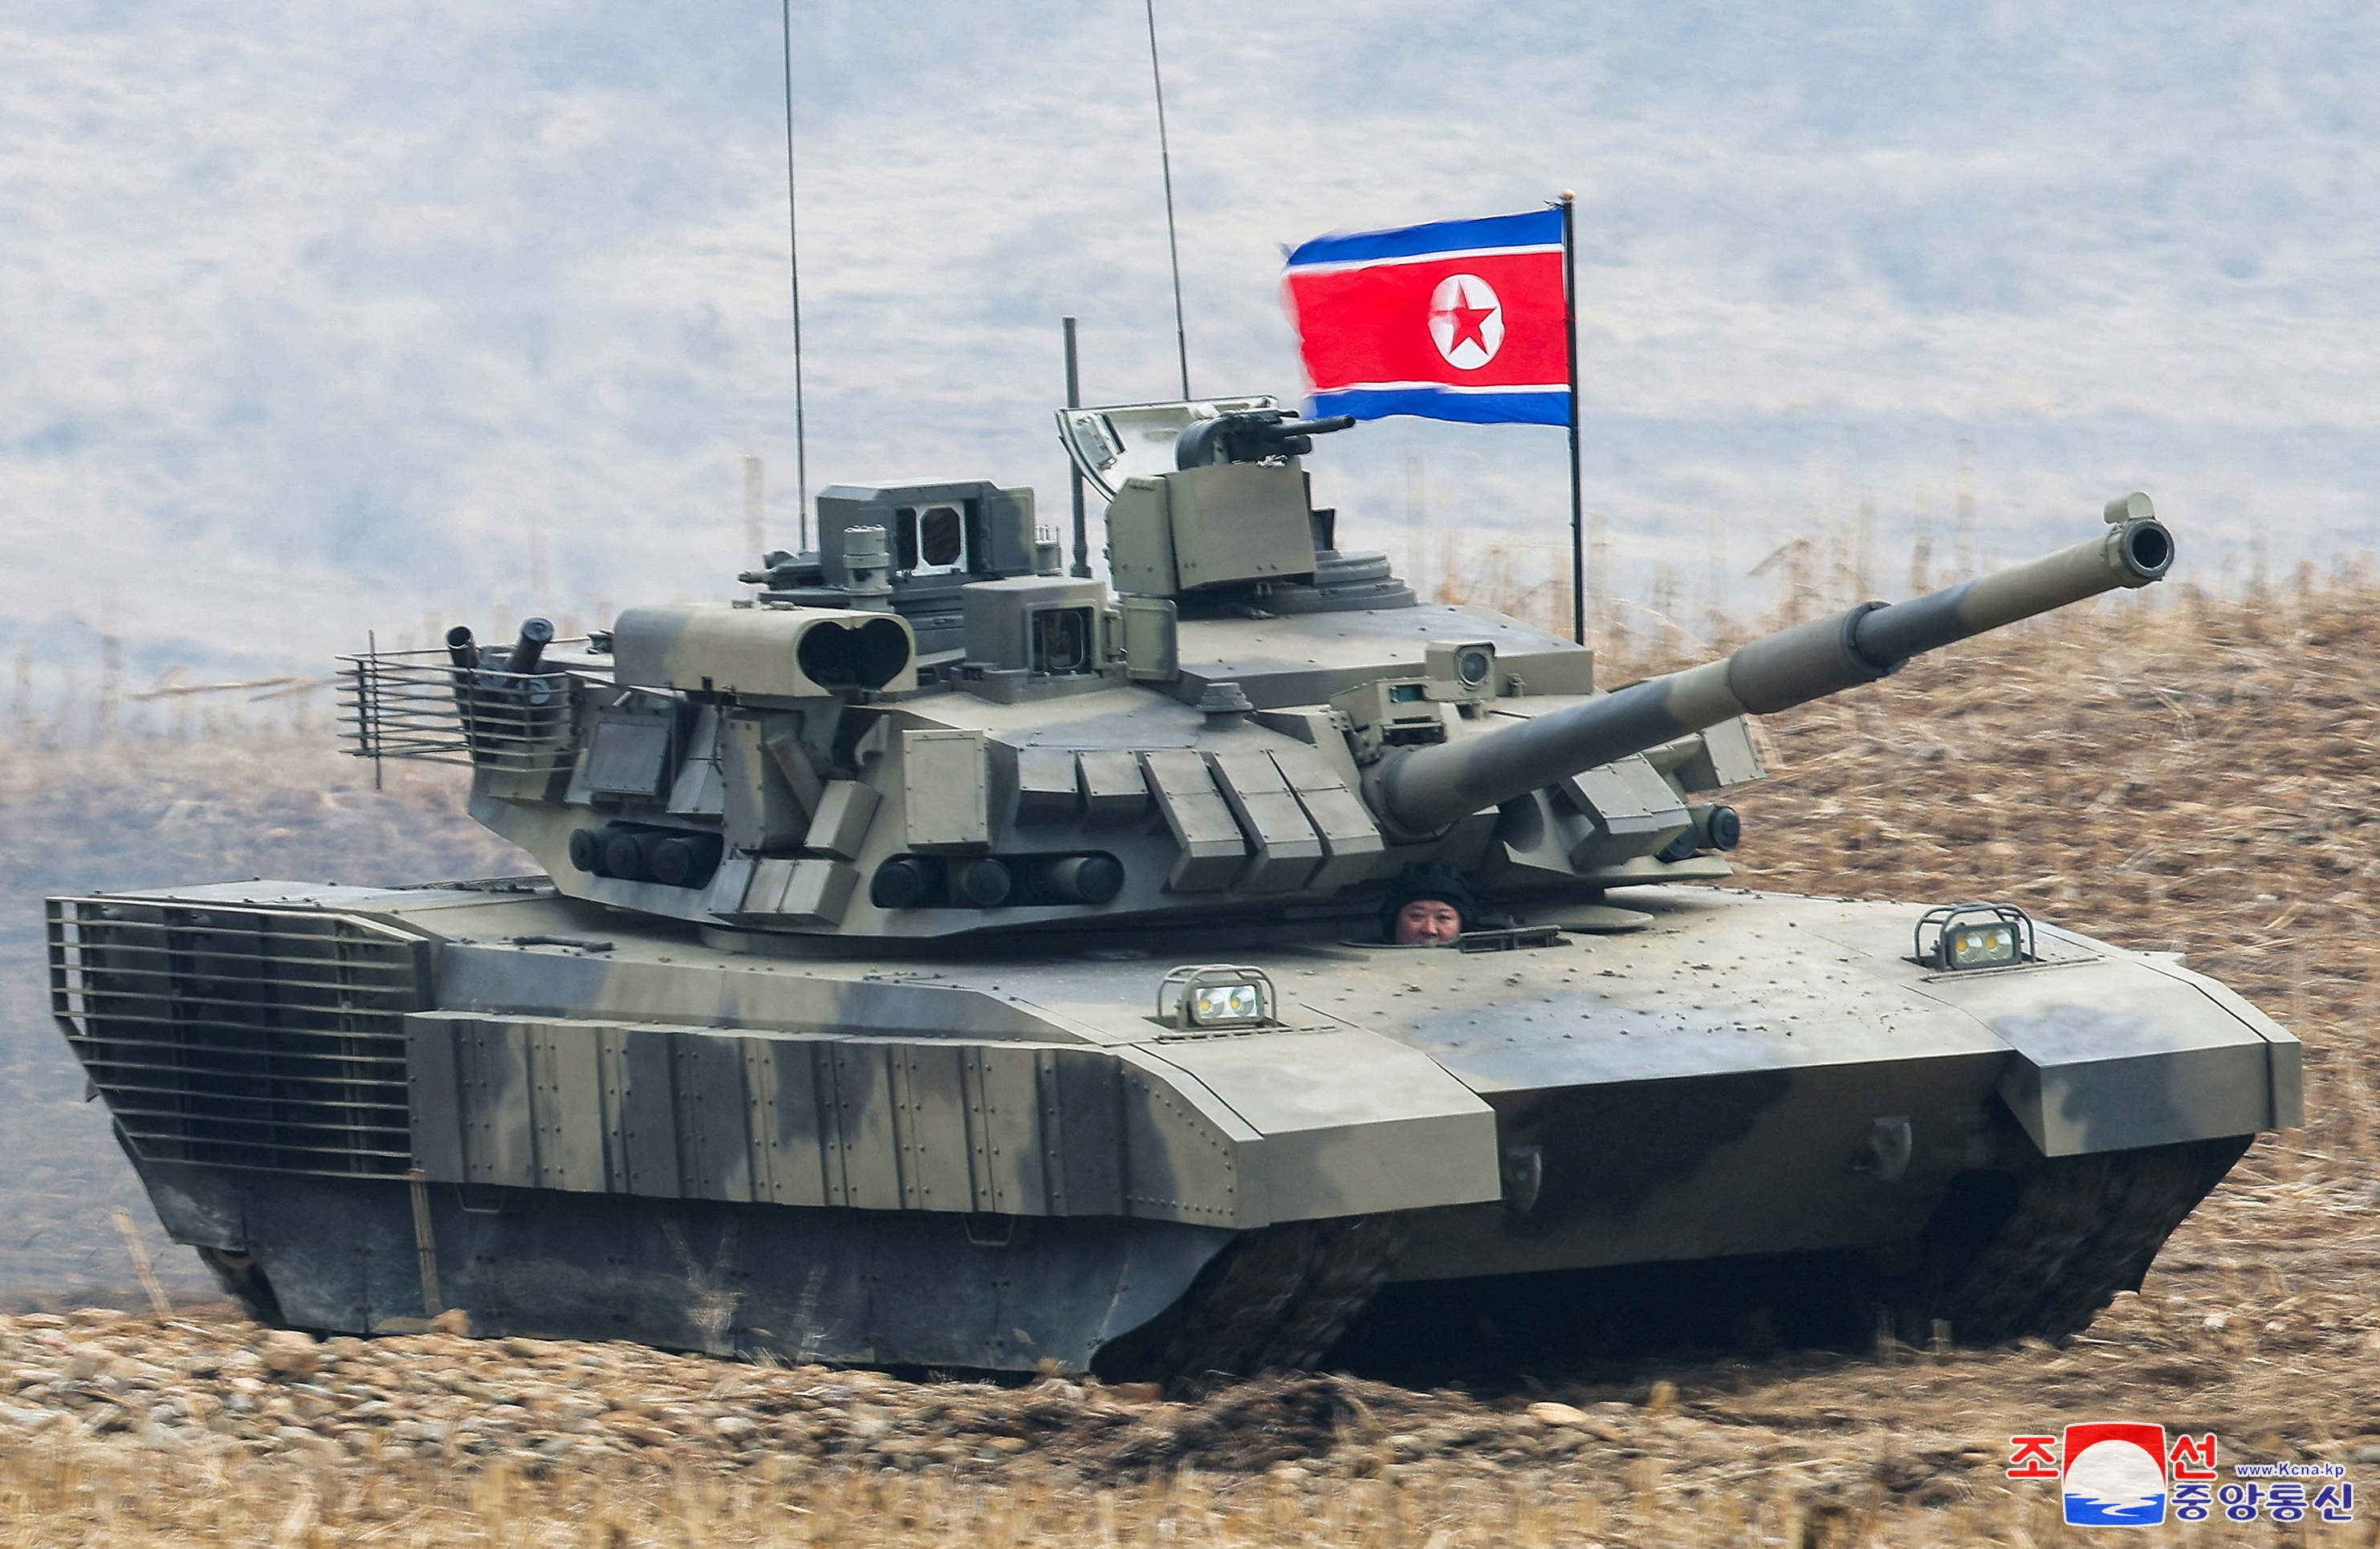 زعيم كوريا الشمالية يكشف عن دبابة جديدة ويقودها بنفسه FV5GVL5UDZO4XB4UIYZDKIFOIM